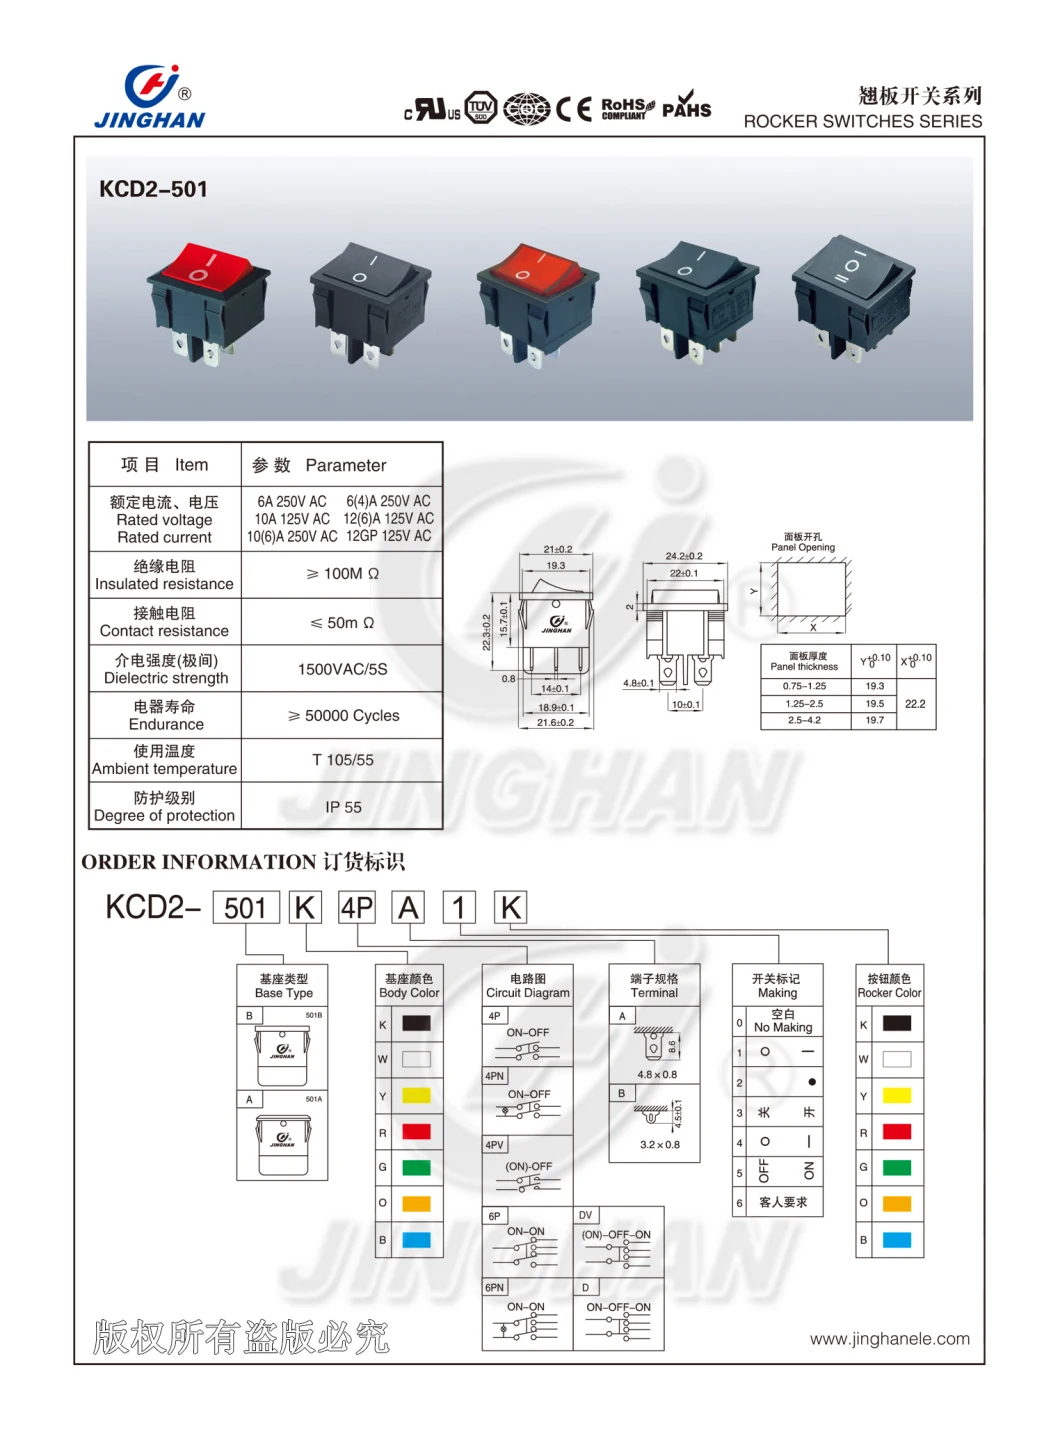 Kcd2-501/4pn Rocker Switch Cover Plate Rocker Switch Circuit Breaker